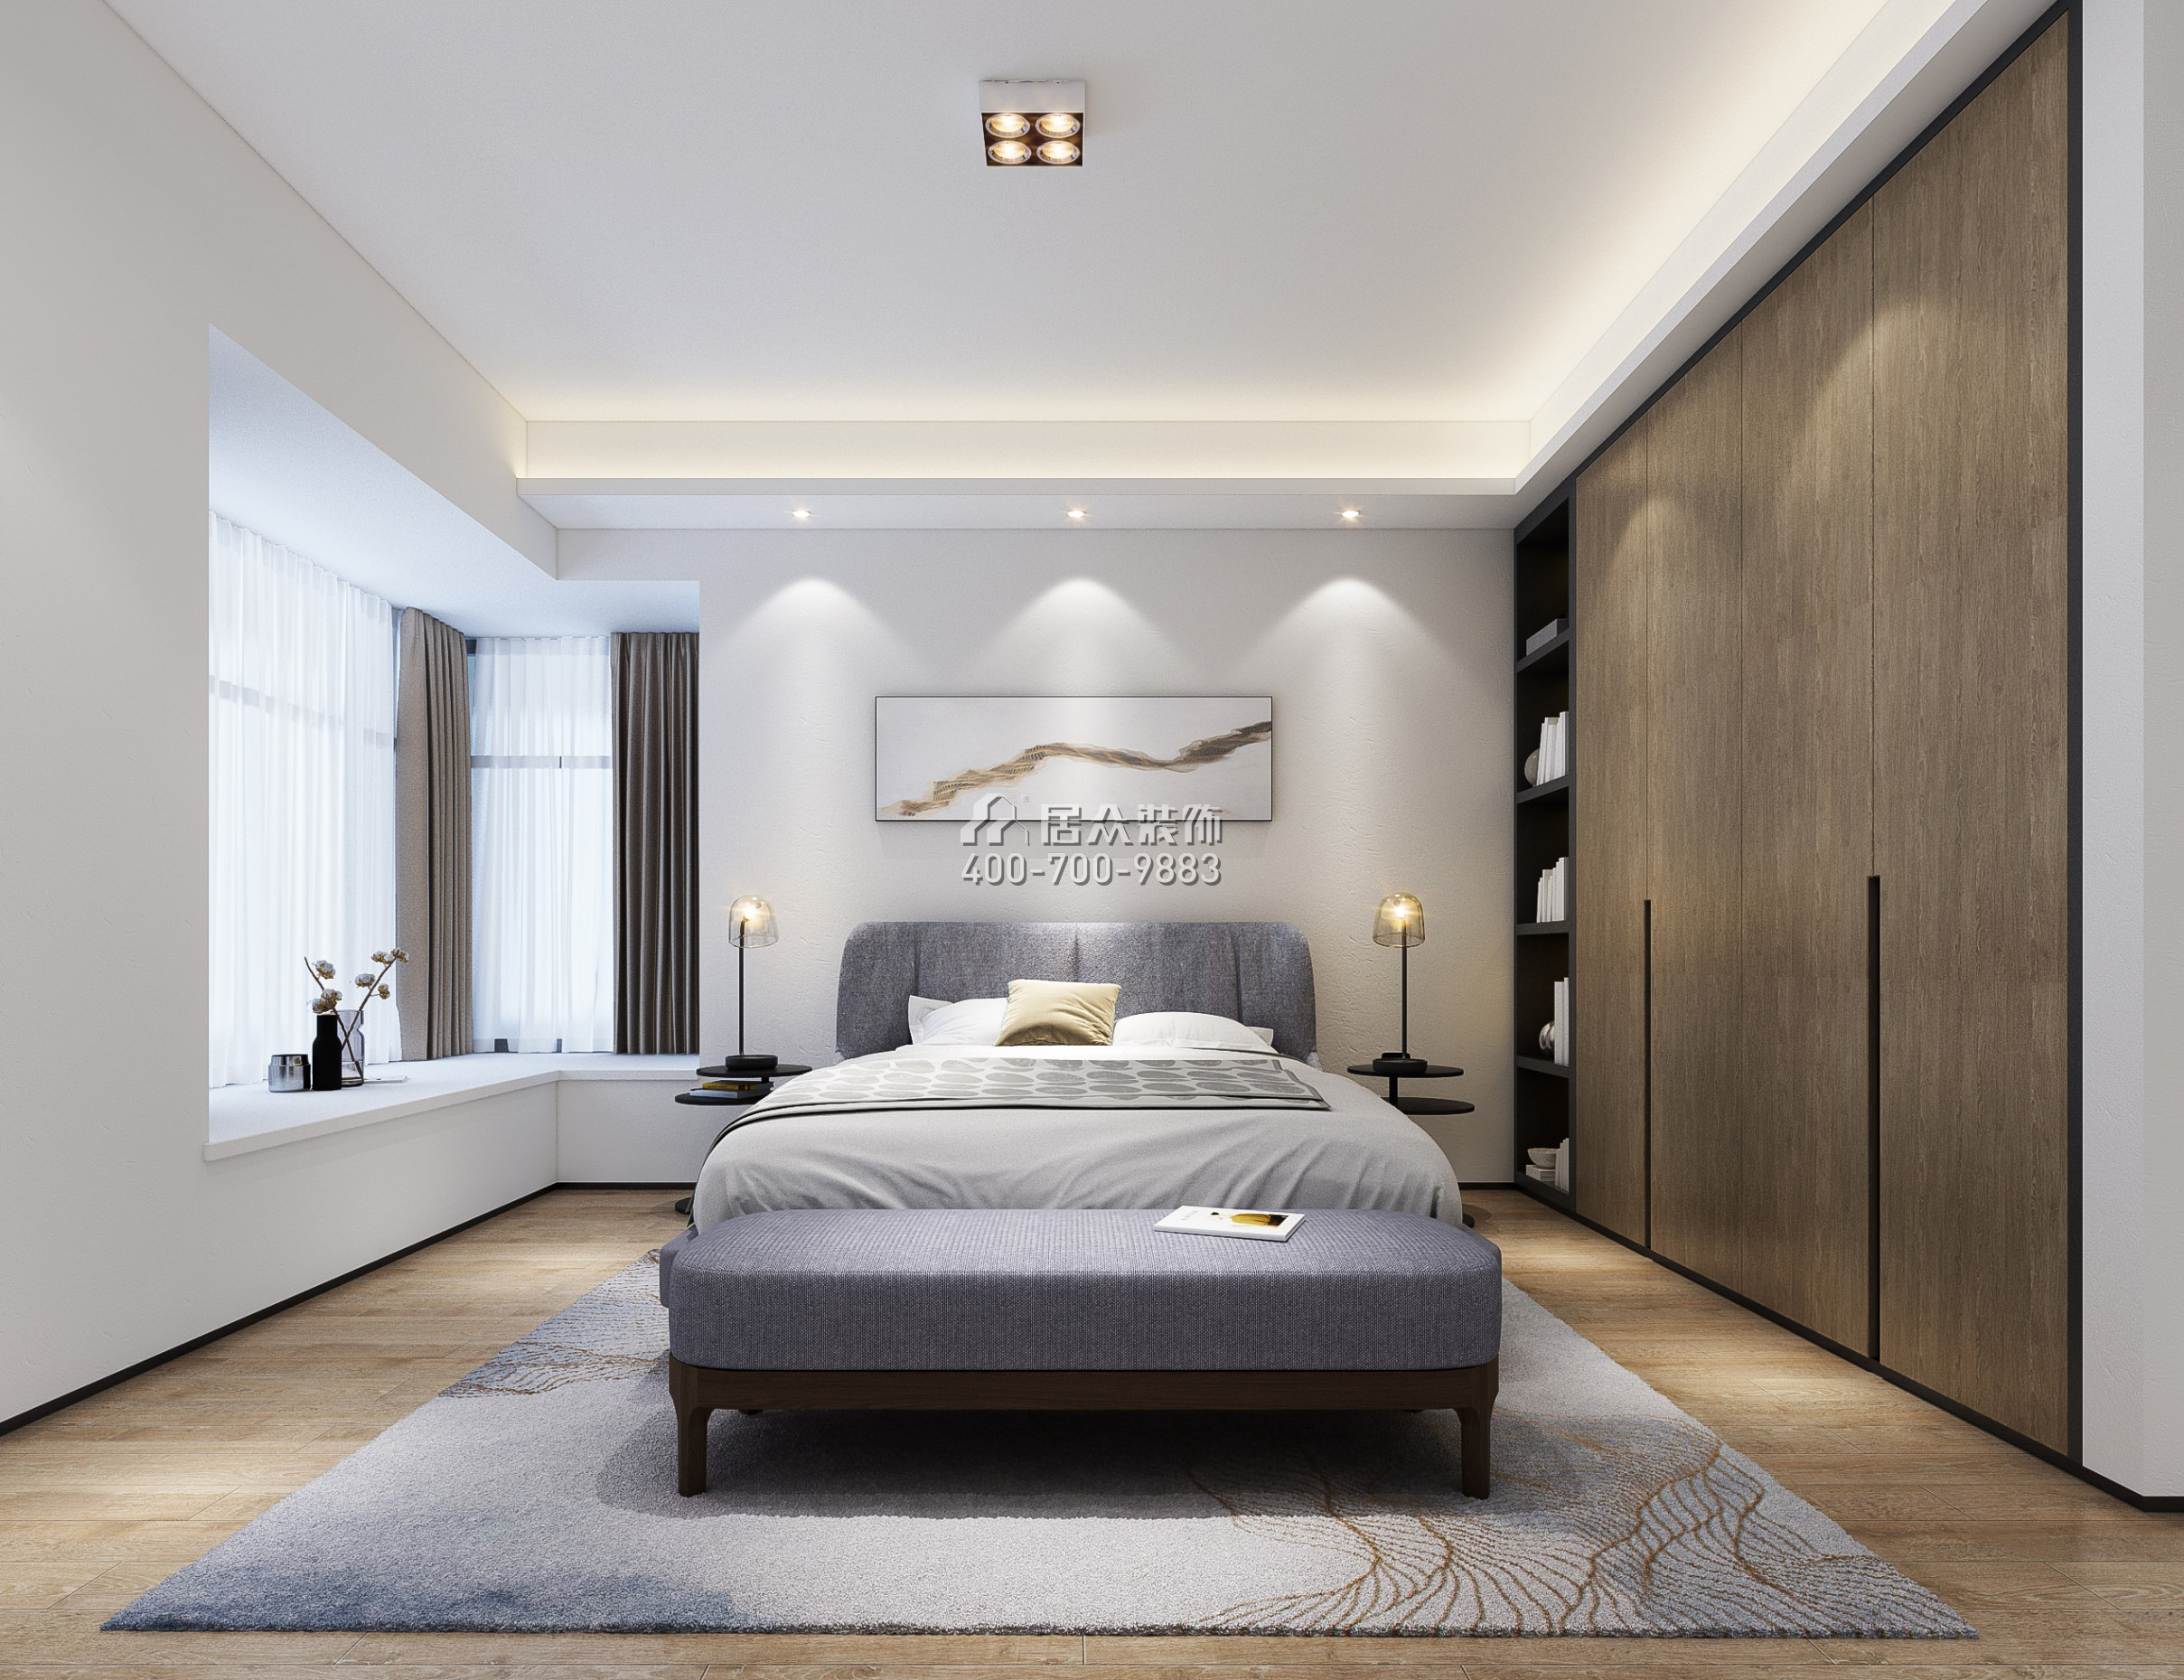 熙龍灣二期274平方米現代簡約風格復式戶型臥室裝修效果圖